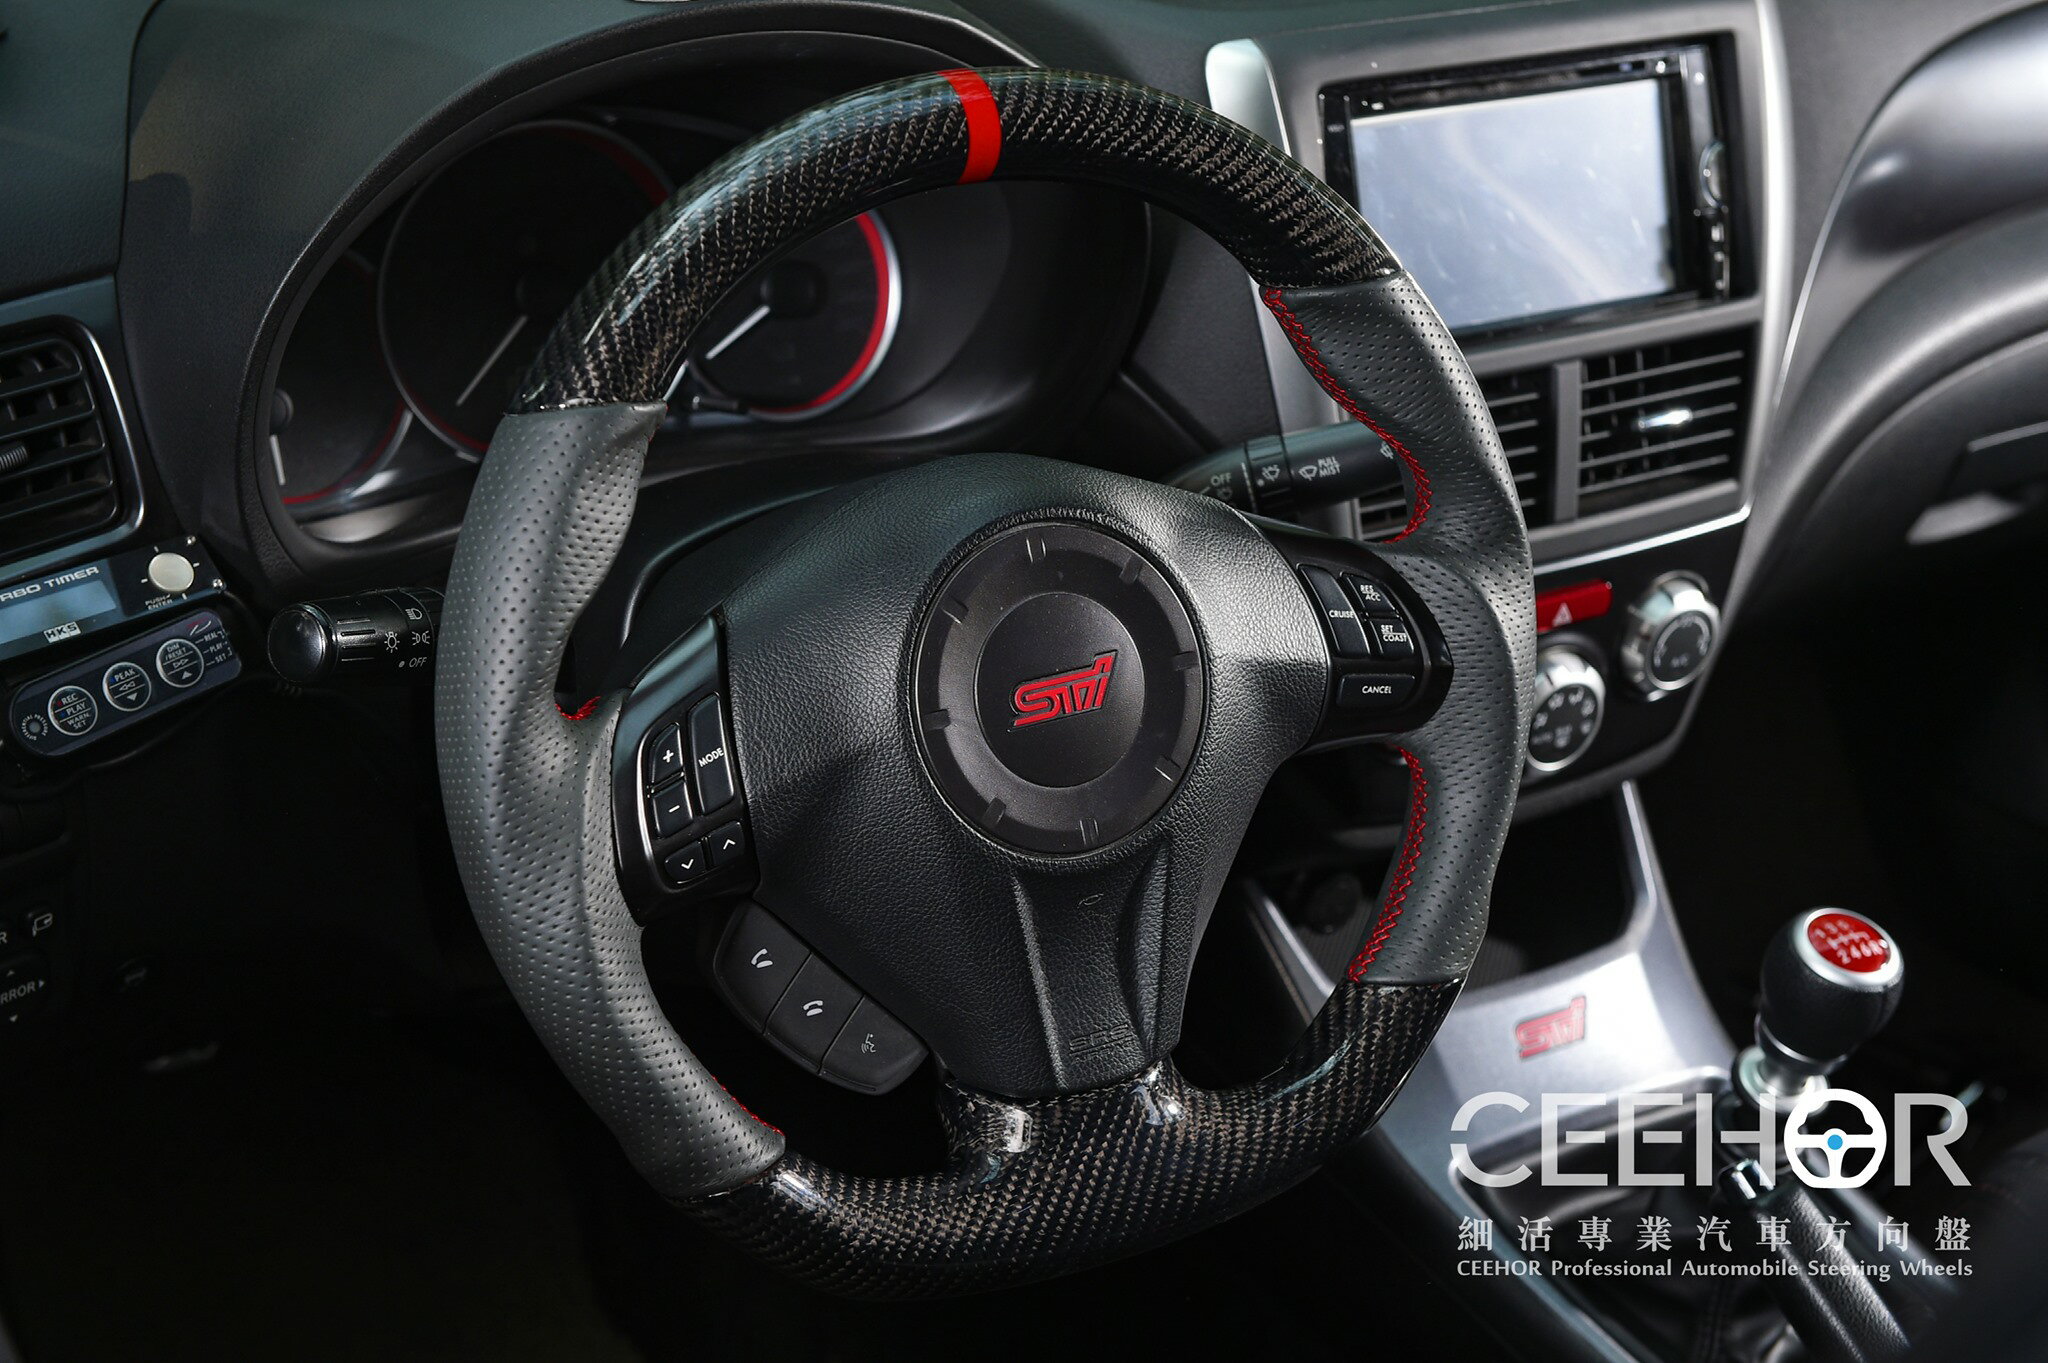 [細活方向盤] 正碳纖維紅環款 Impreza Legacy Wrx Sti Forester Subaru 速霸陸 變形蟲方向盤 方向盤 造型方向盤